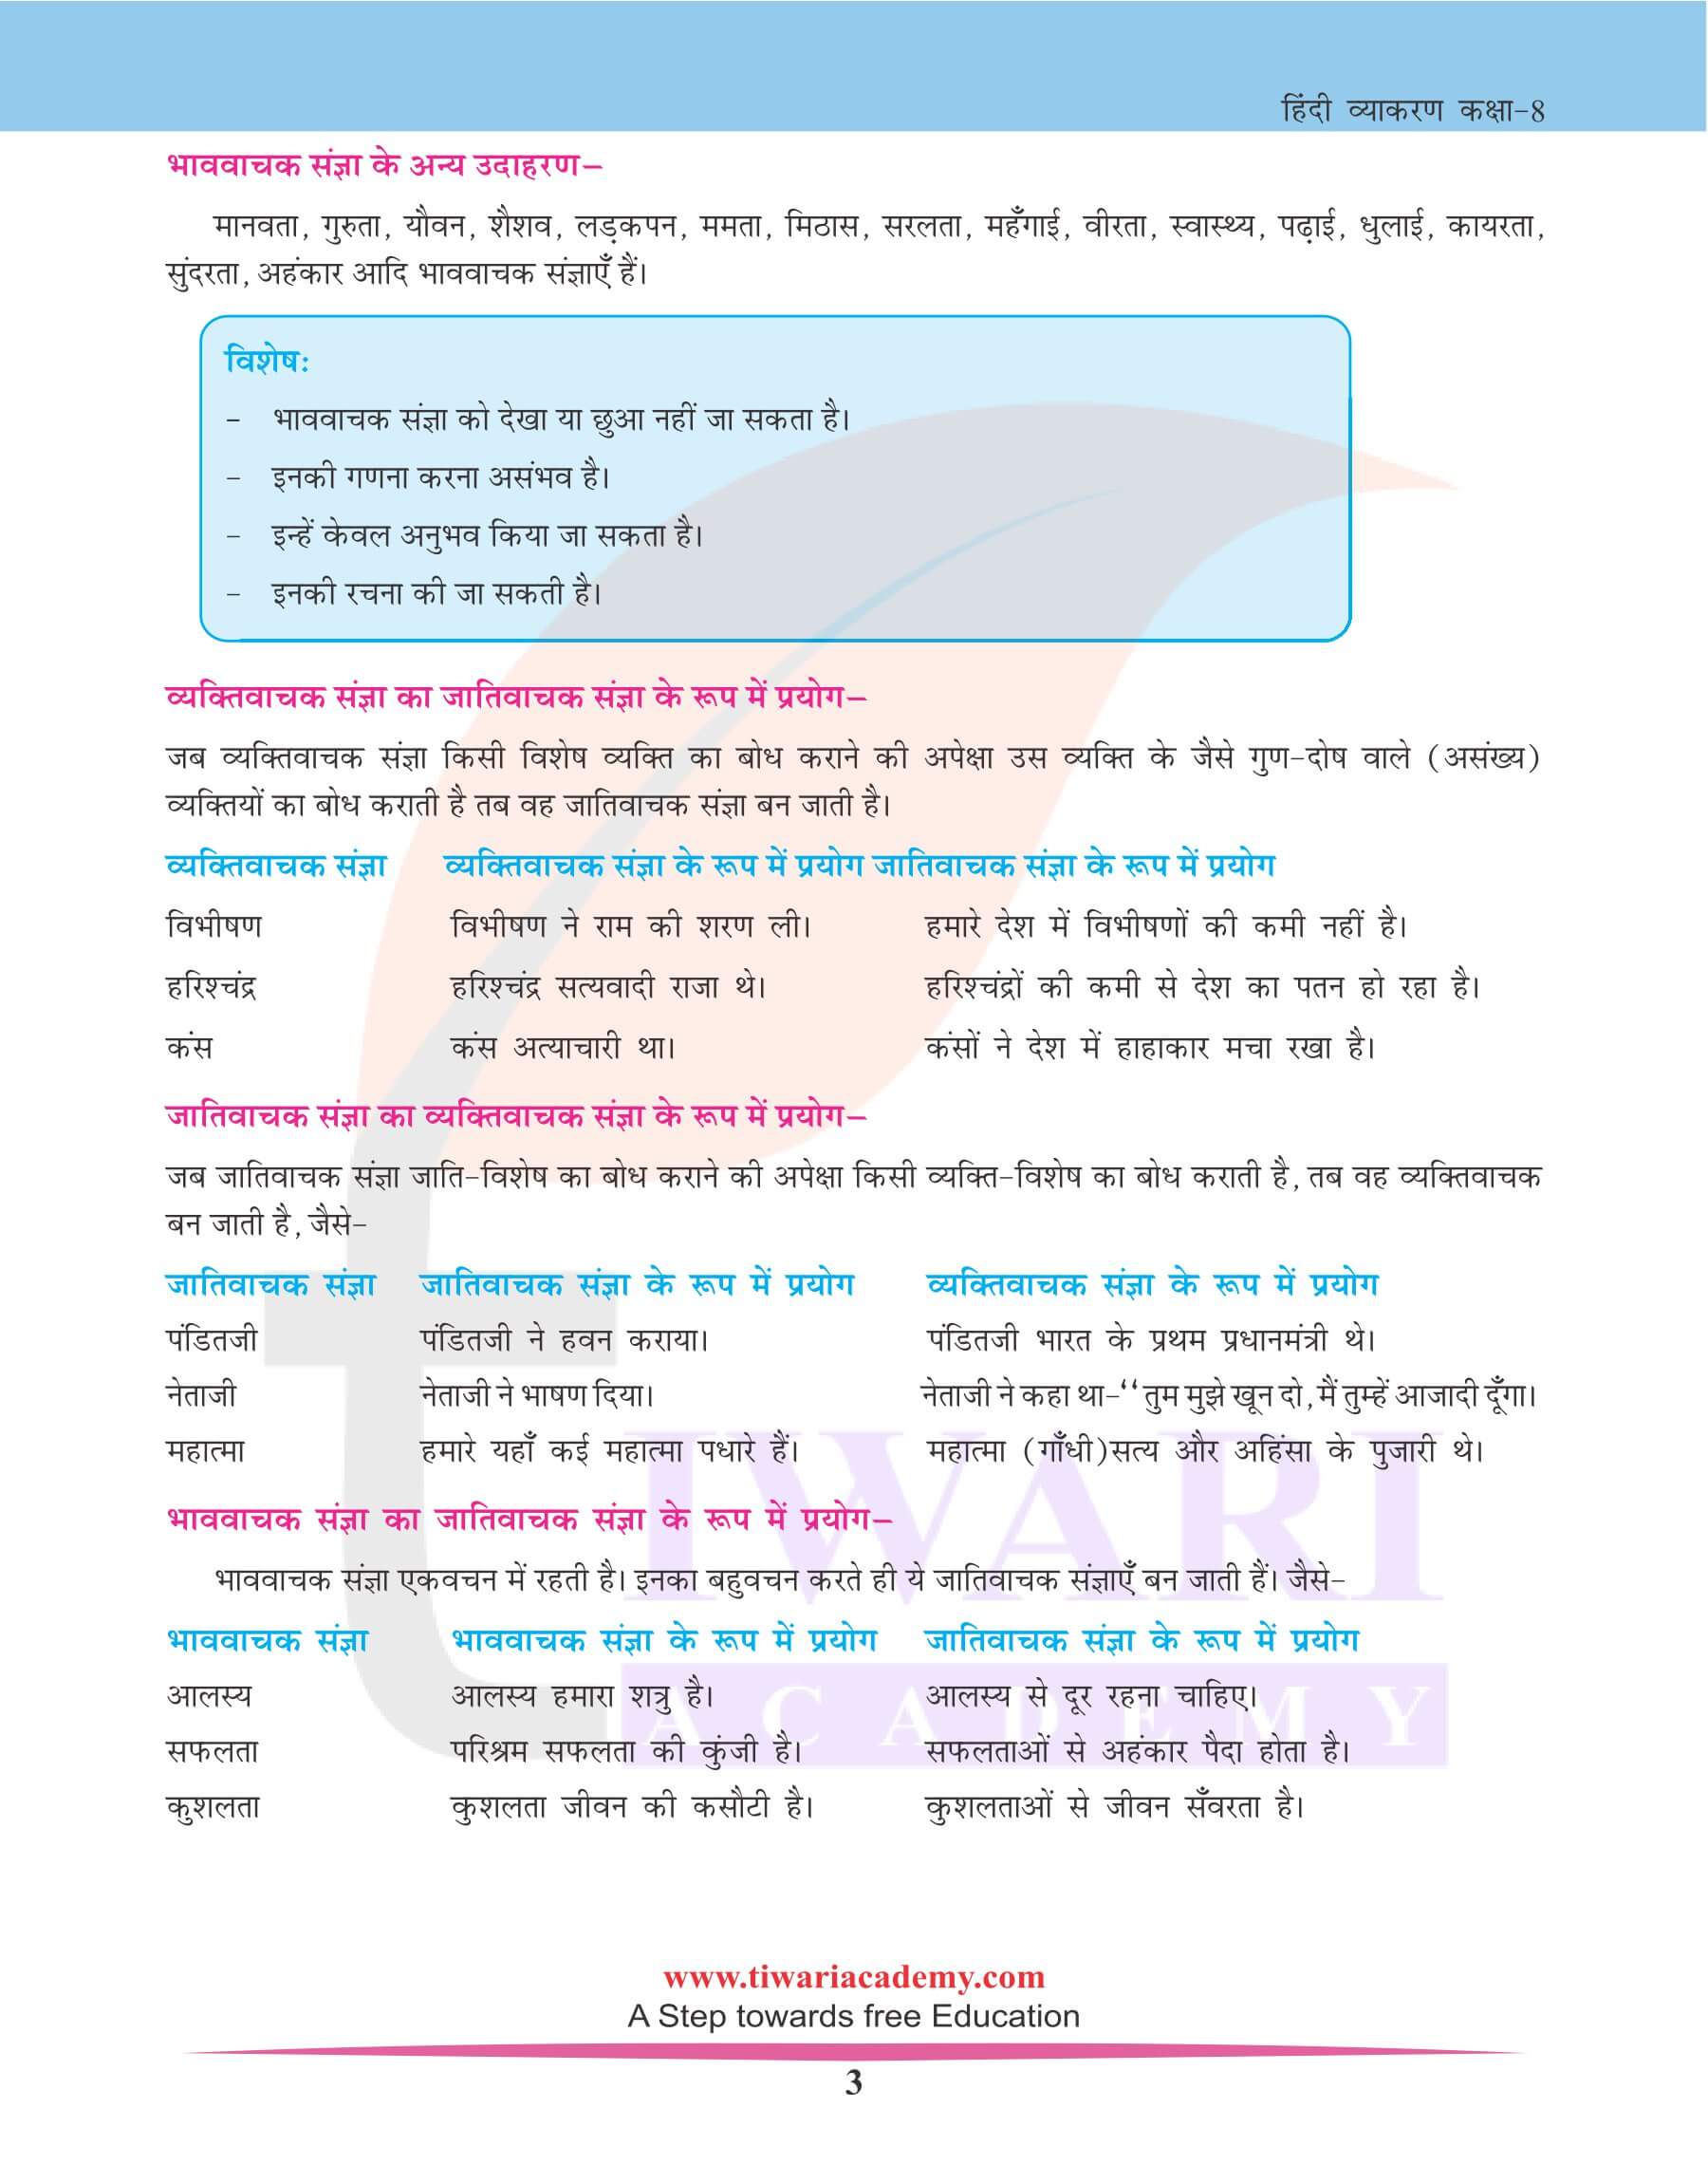 कक्षा 8 हिंदी व्याकरण में संज्ञा